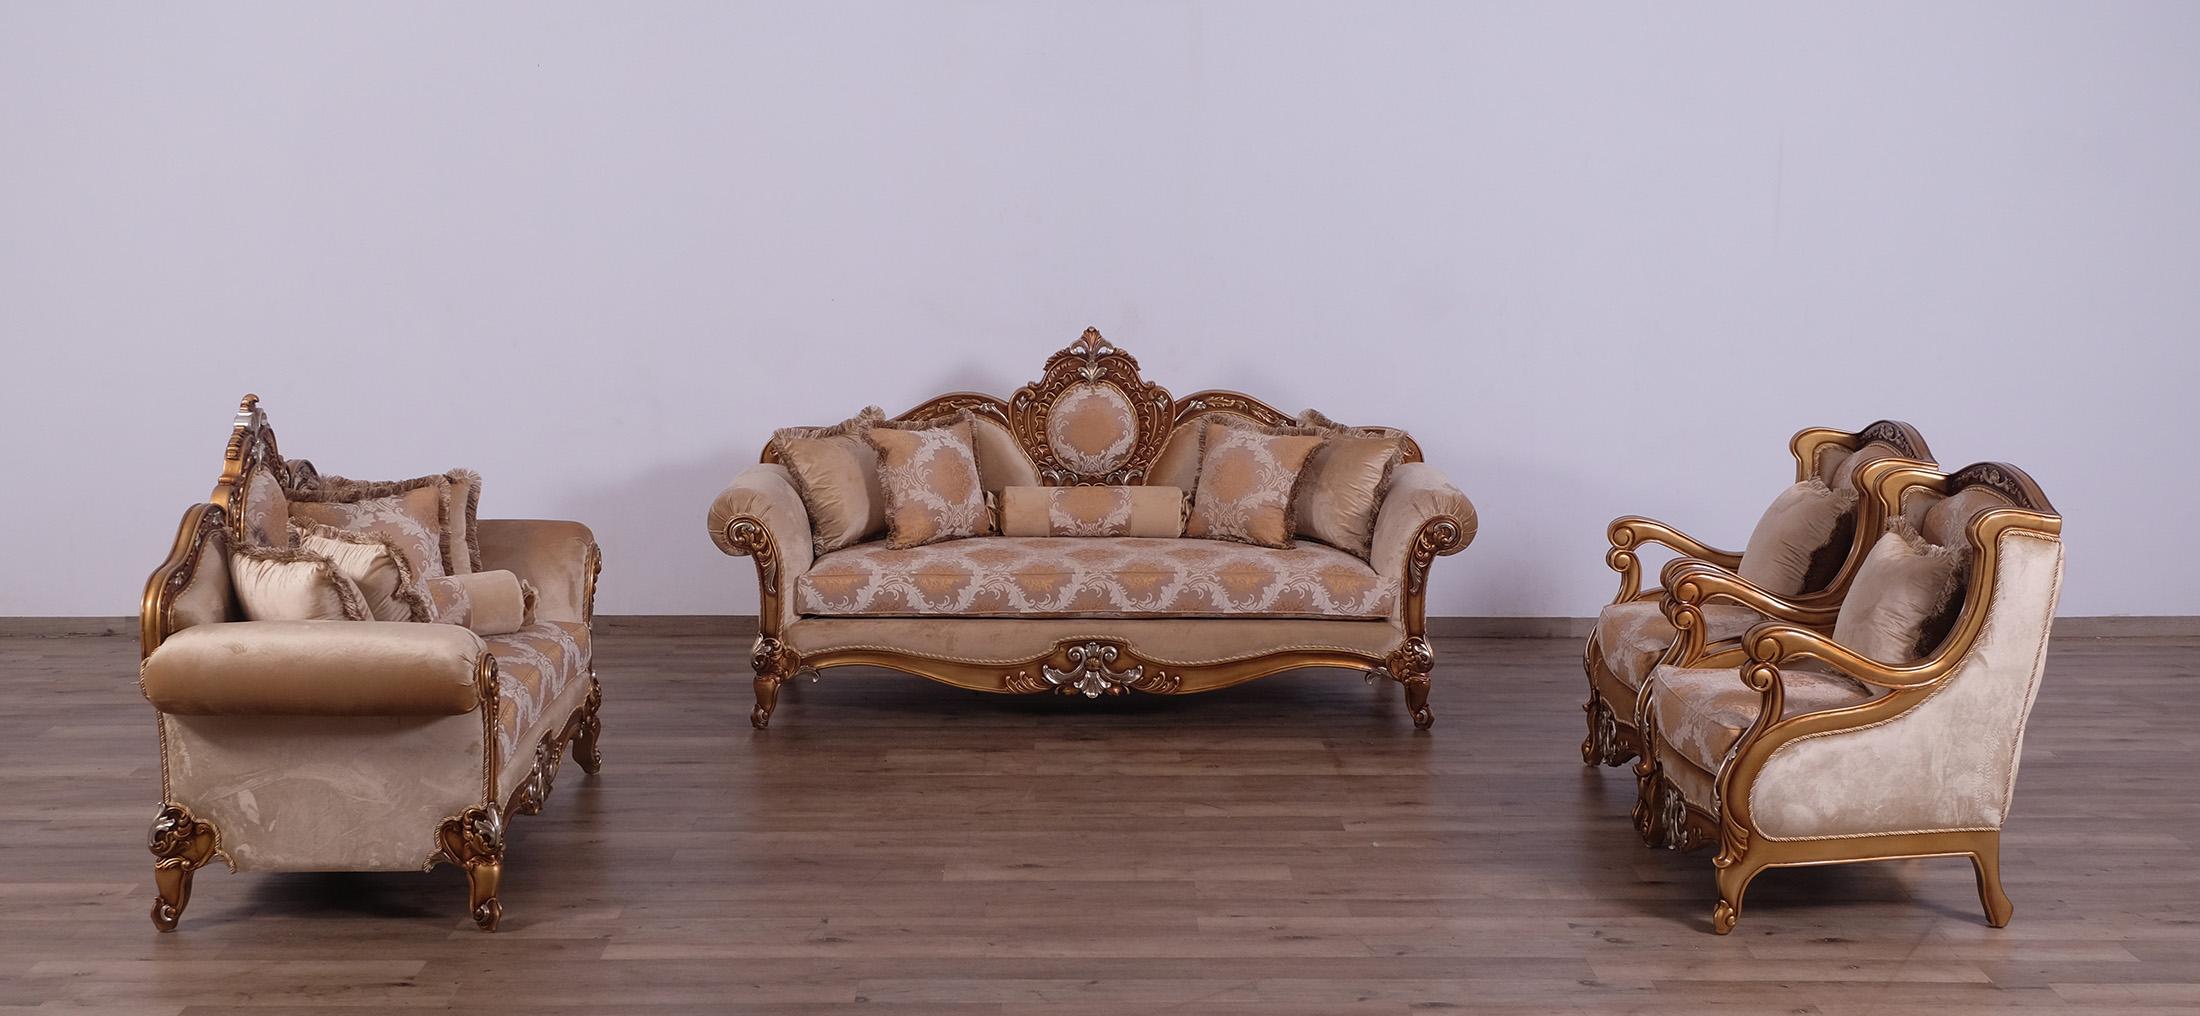 

        
663701291865Imperial Luxury Brown Gold RAFFAELLO II Arm Chair EUROPEAN FURNITURE Classic
